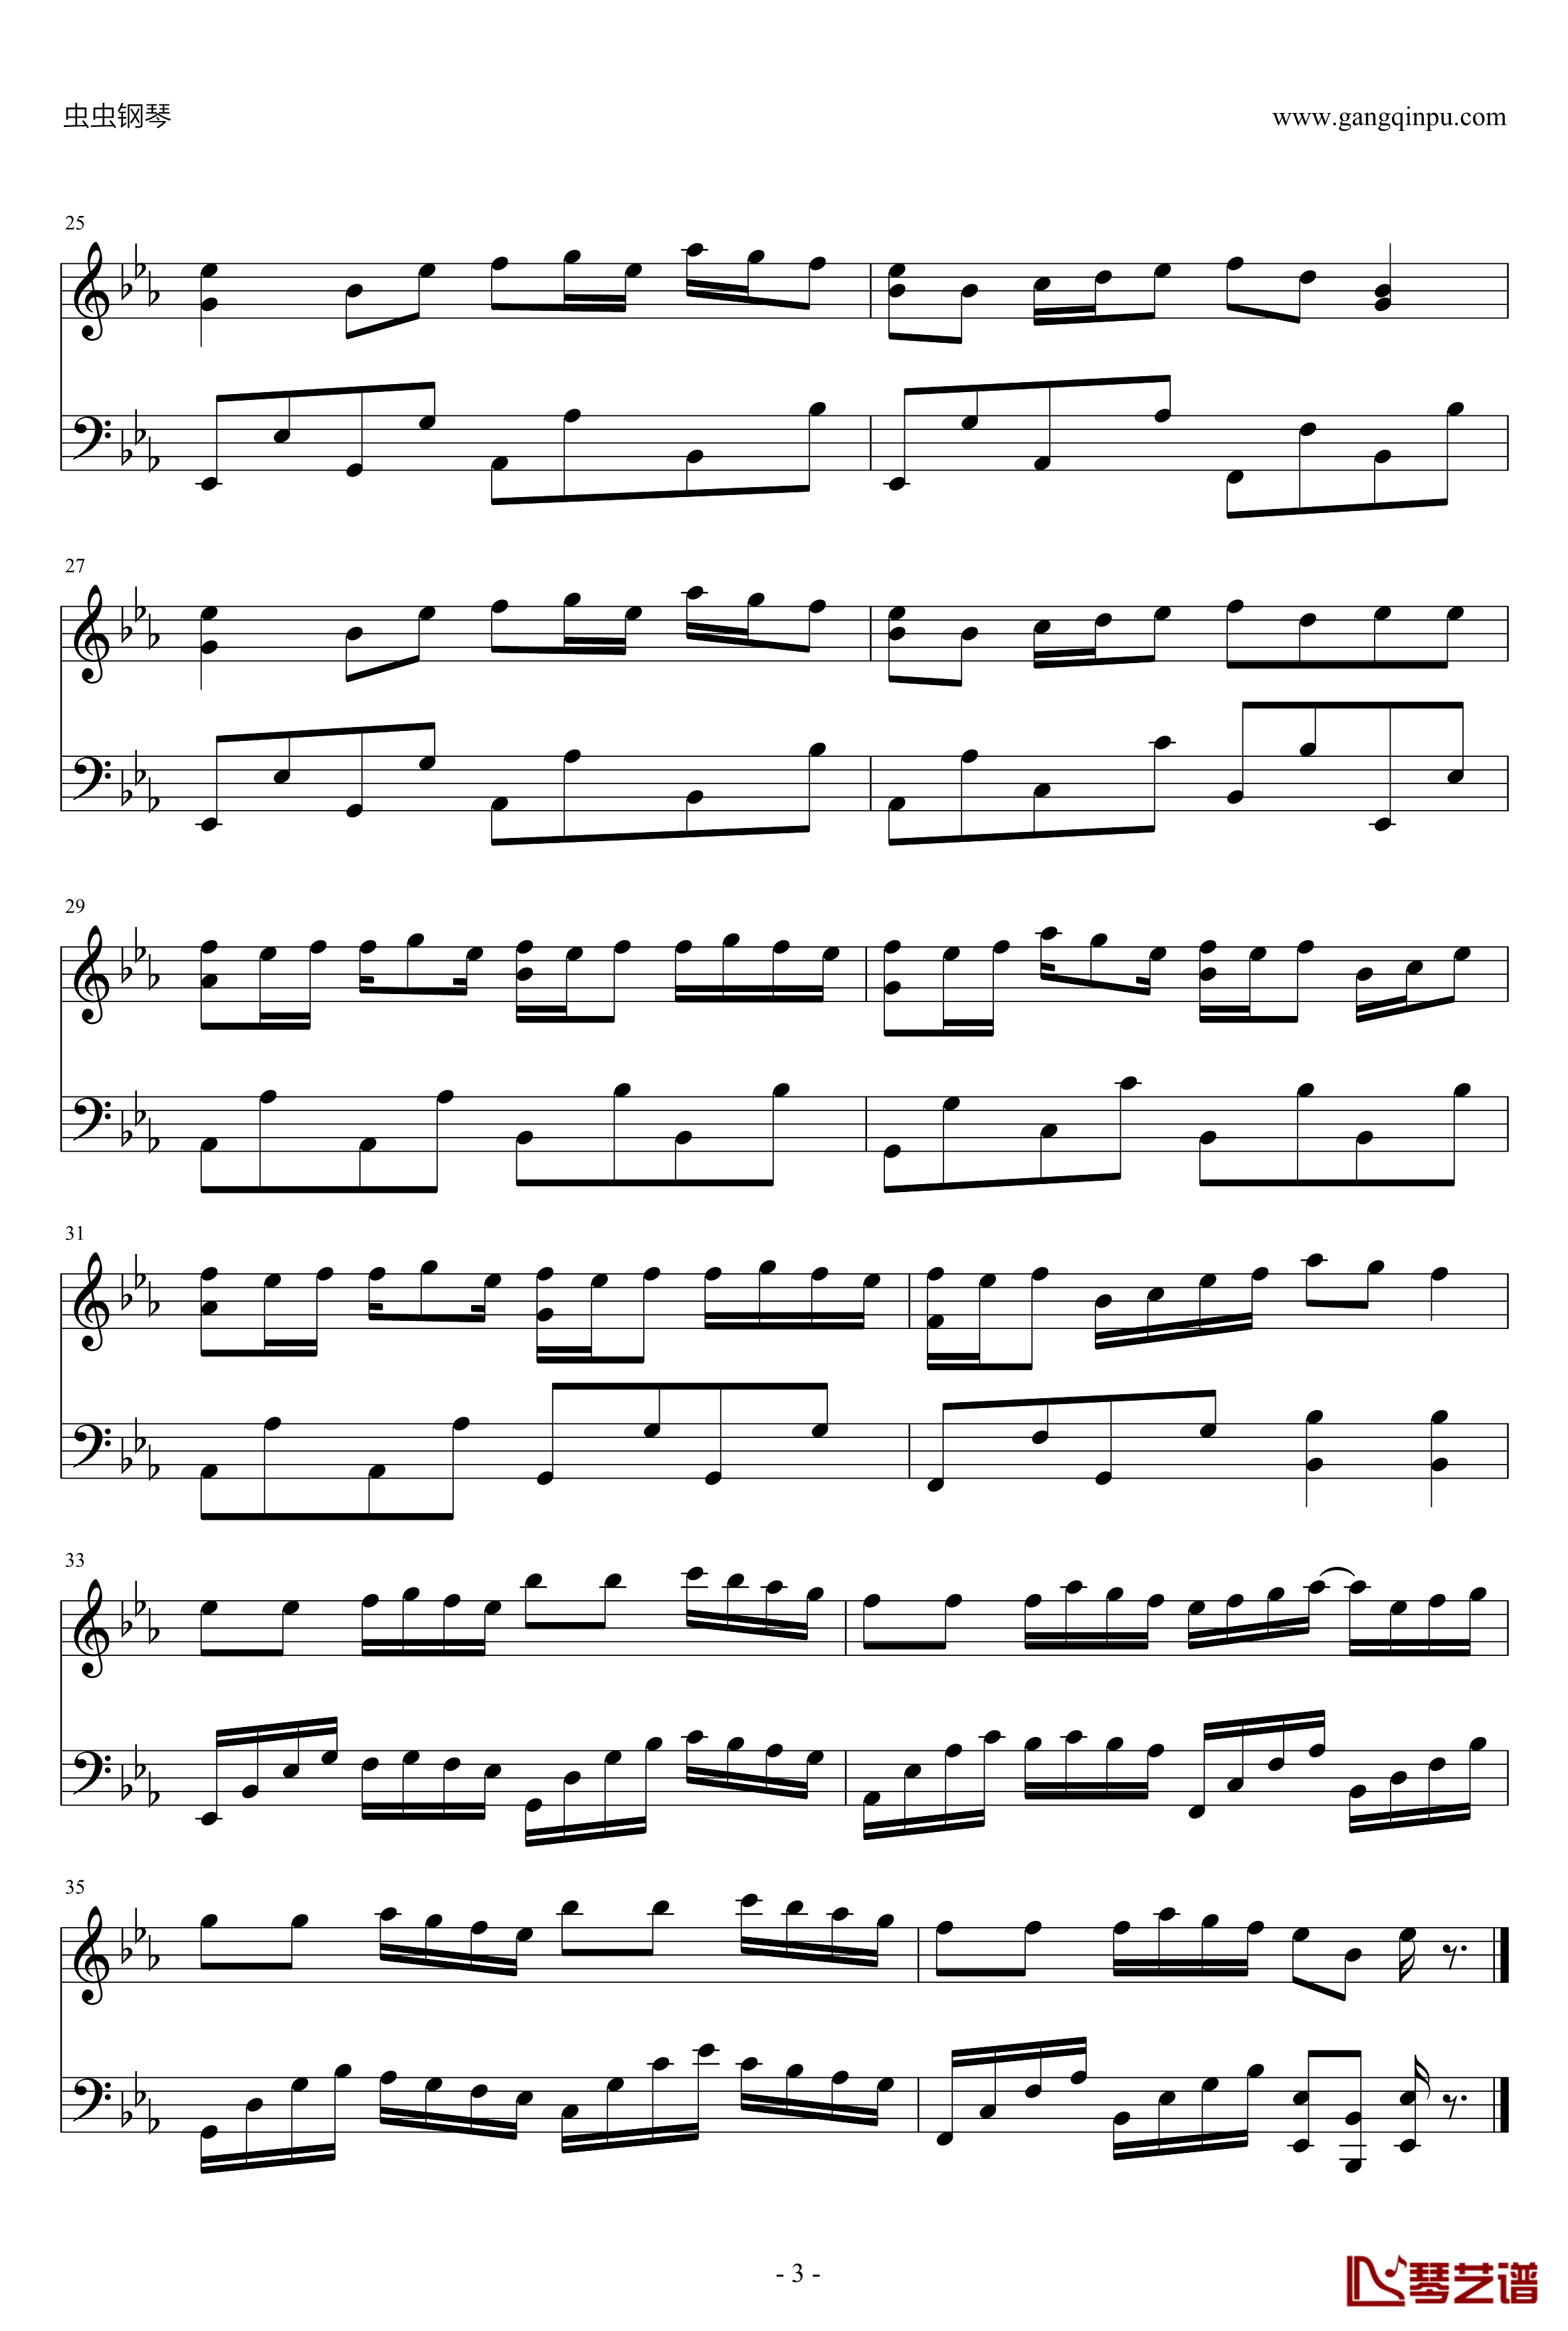 Linear Slope钢琴谱-線形勾配-かわいいシリーズ万恶之源3